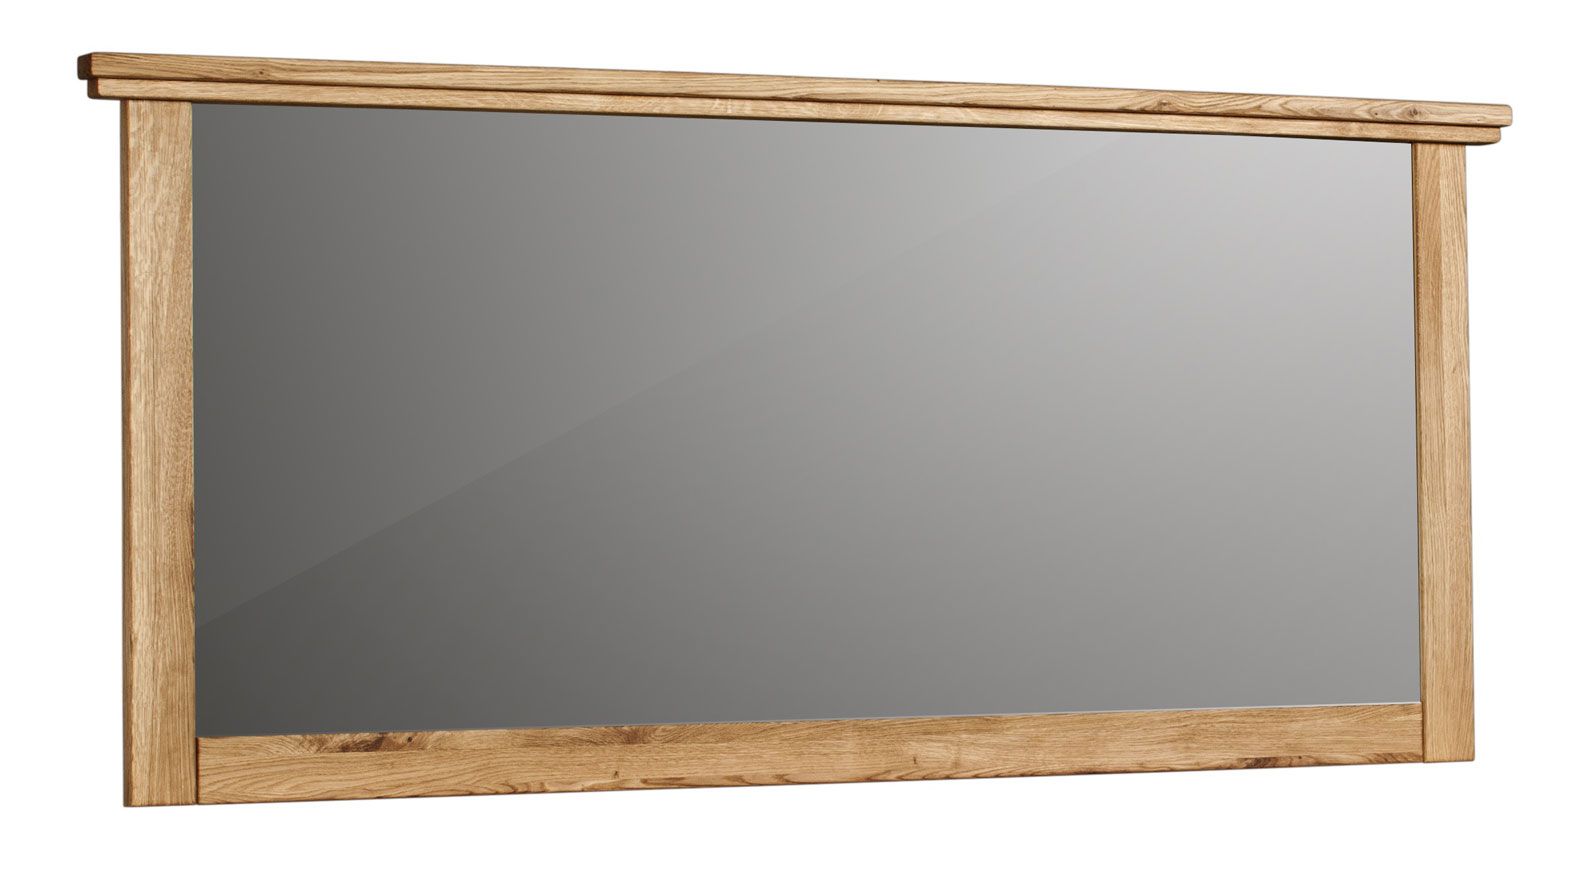 Grand miroir avec cadre en bois Floresta 12, couleur : naturel, chêne massif, finition de qualité, 76 x 169 x 51 cm, style contemporain